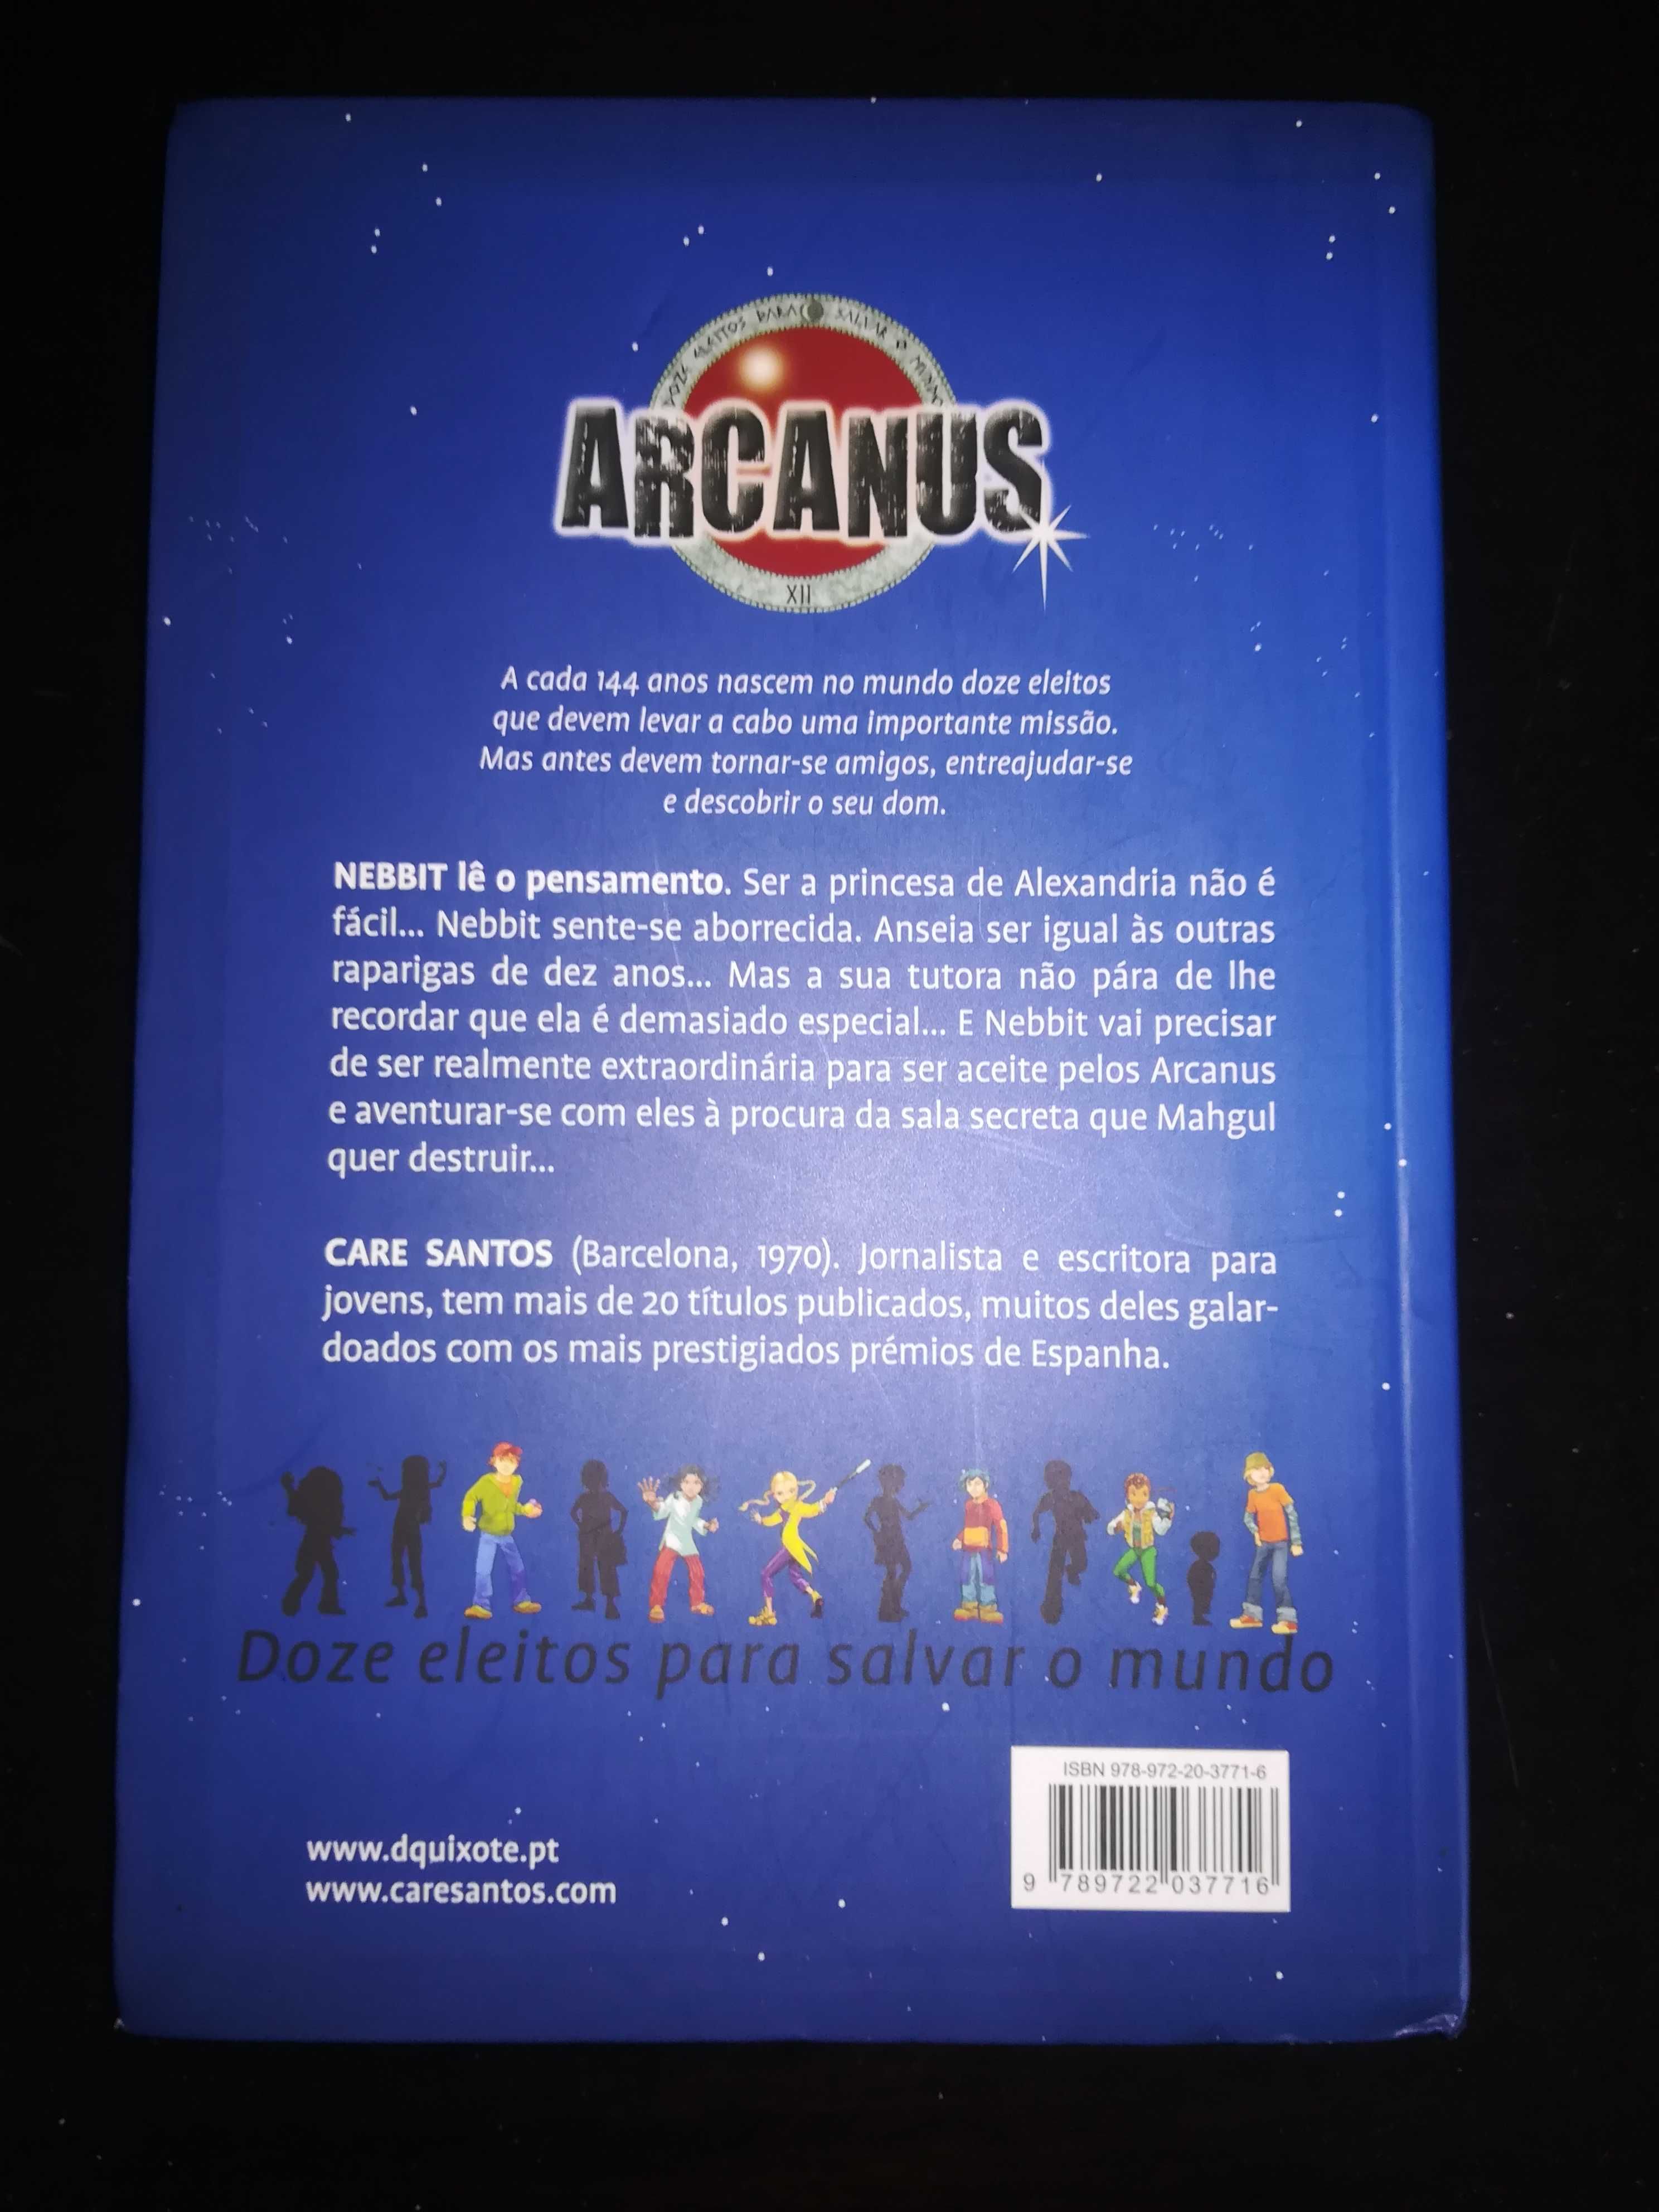 Livro "Arcanus" de Care Santos